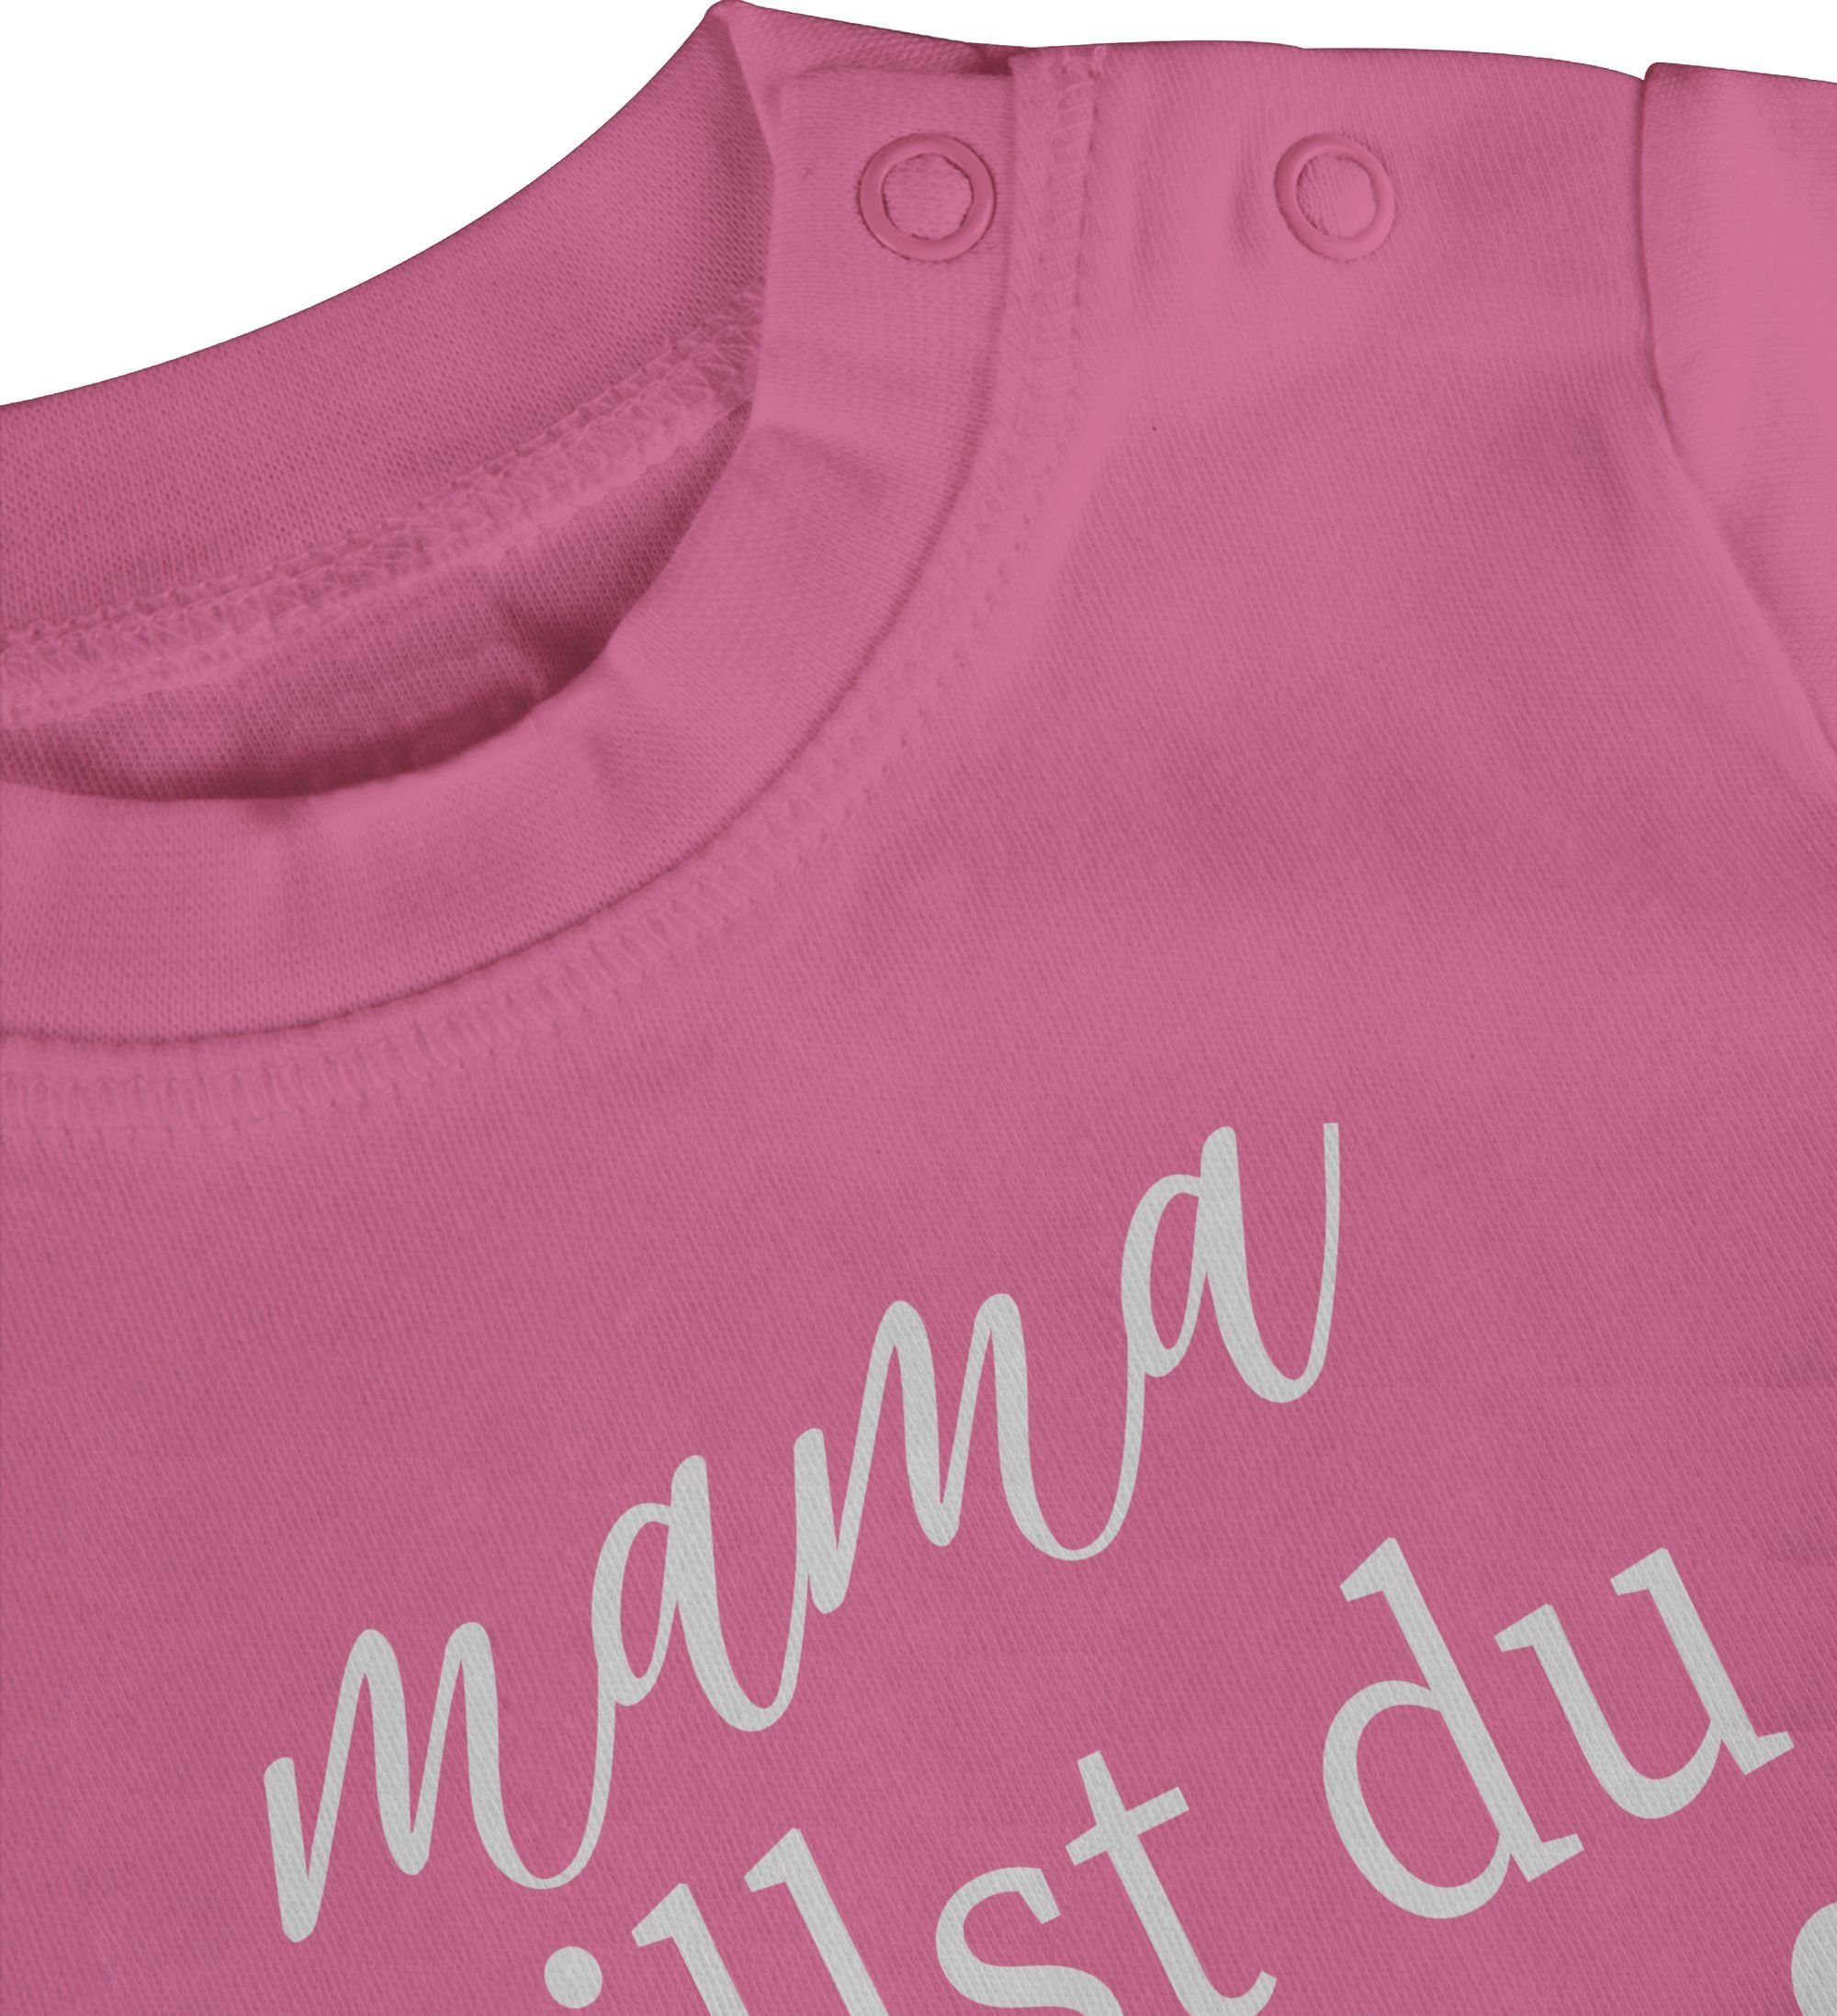 Baby heiraten T-Shirt 1 Wollen Pink Shirtracer du heiraten Baby Papa - wir Papa Daddy Hochzeit hei willst Mama -